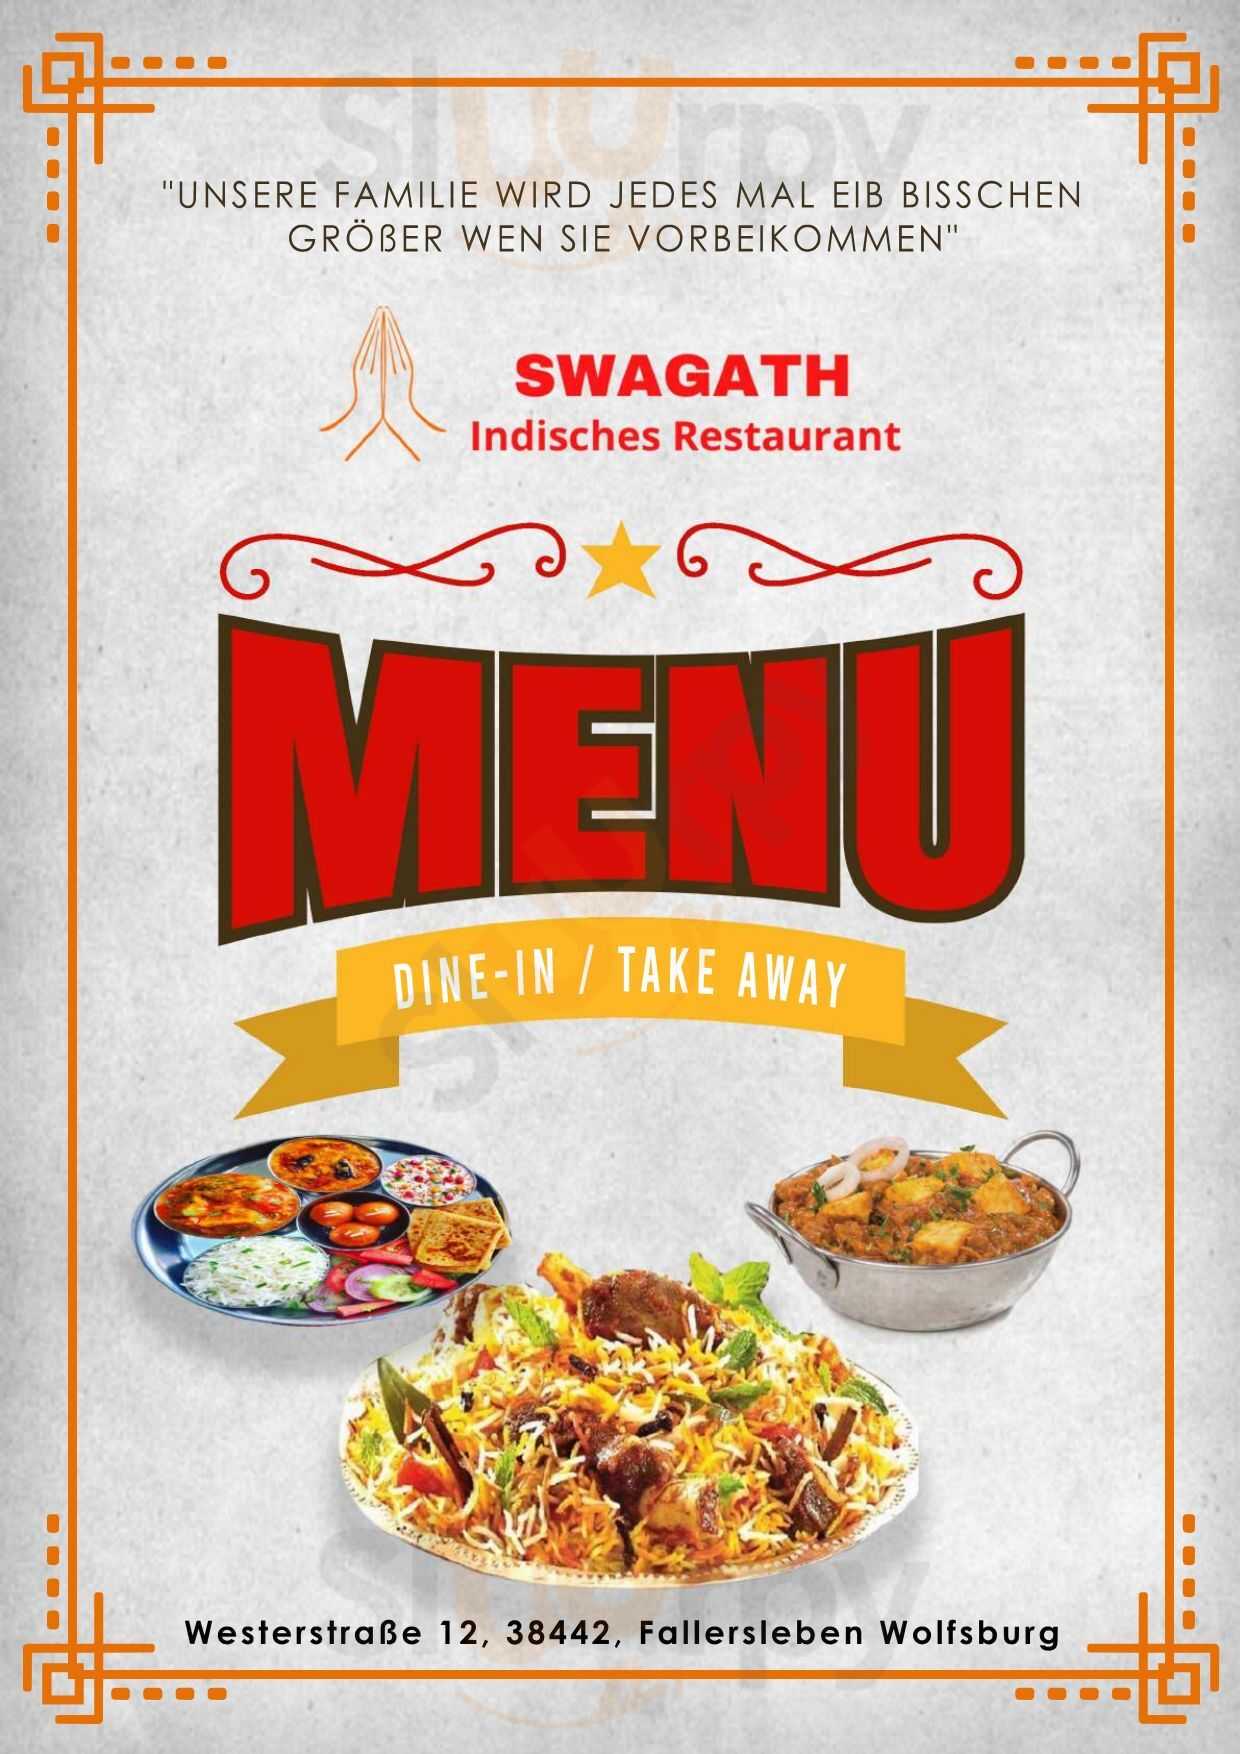 Swagath Indisches Restaurant Wolfsburg Menu - 1